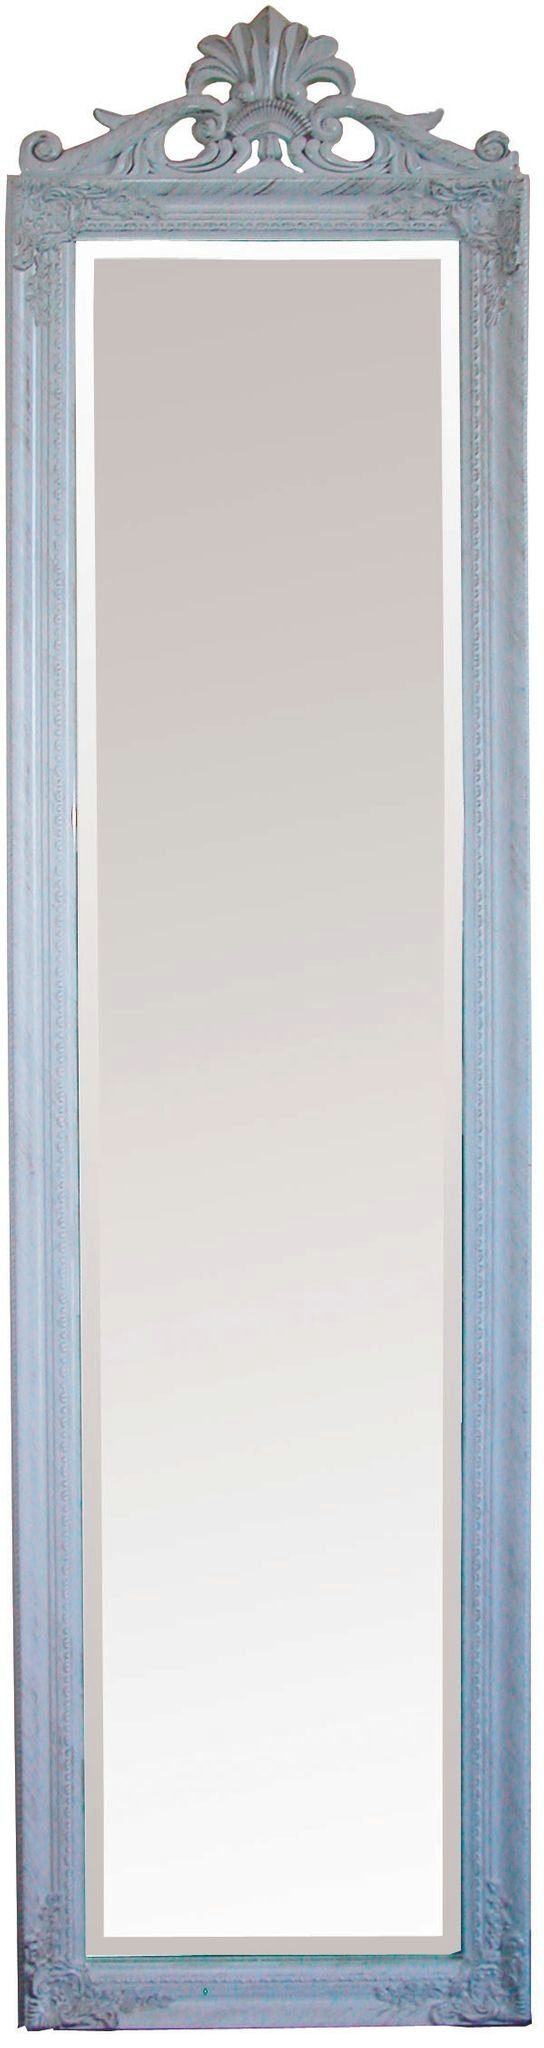 180x45x5 Barock weiß elbmöbel Spiegel: Standspiegel Standspiegel cm Standspiegel weiß groß,